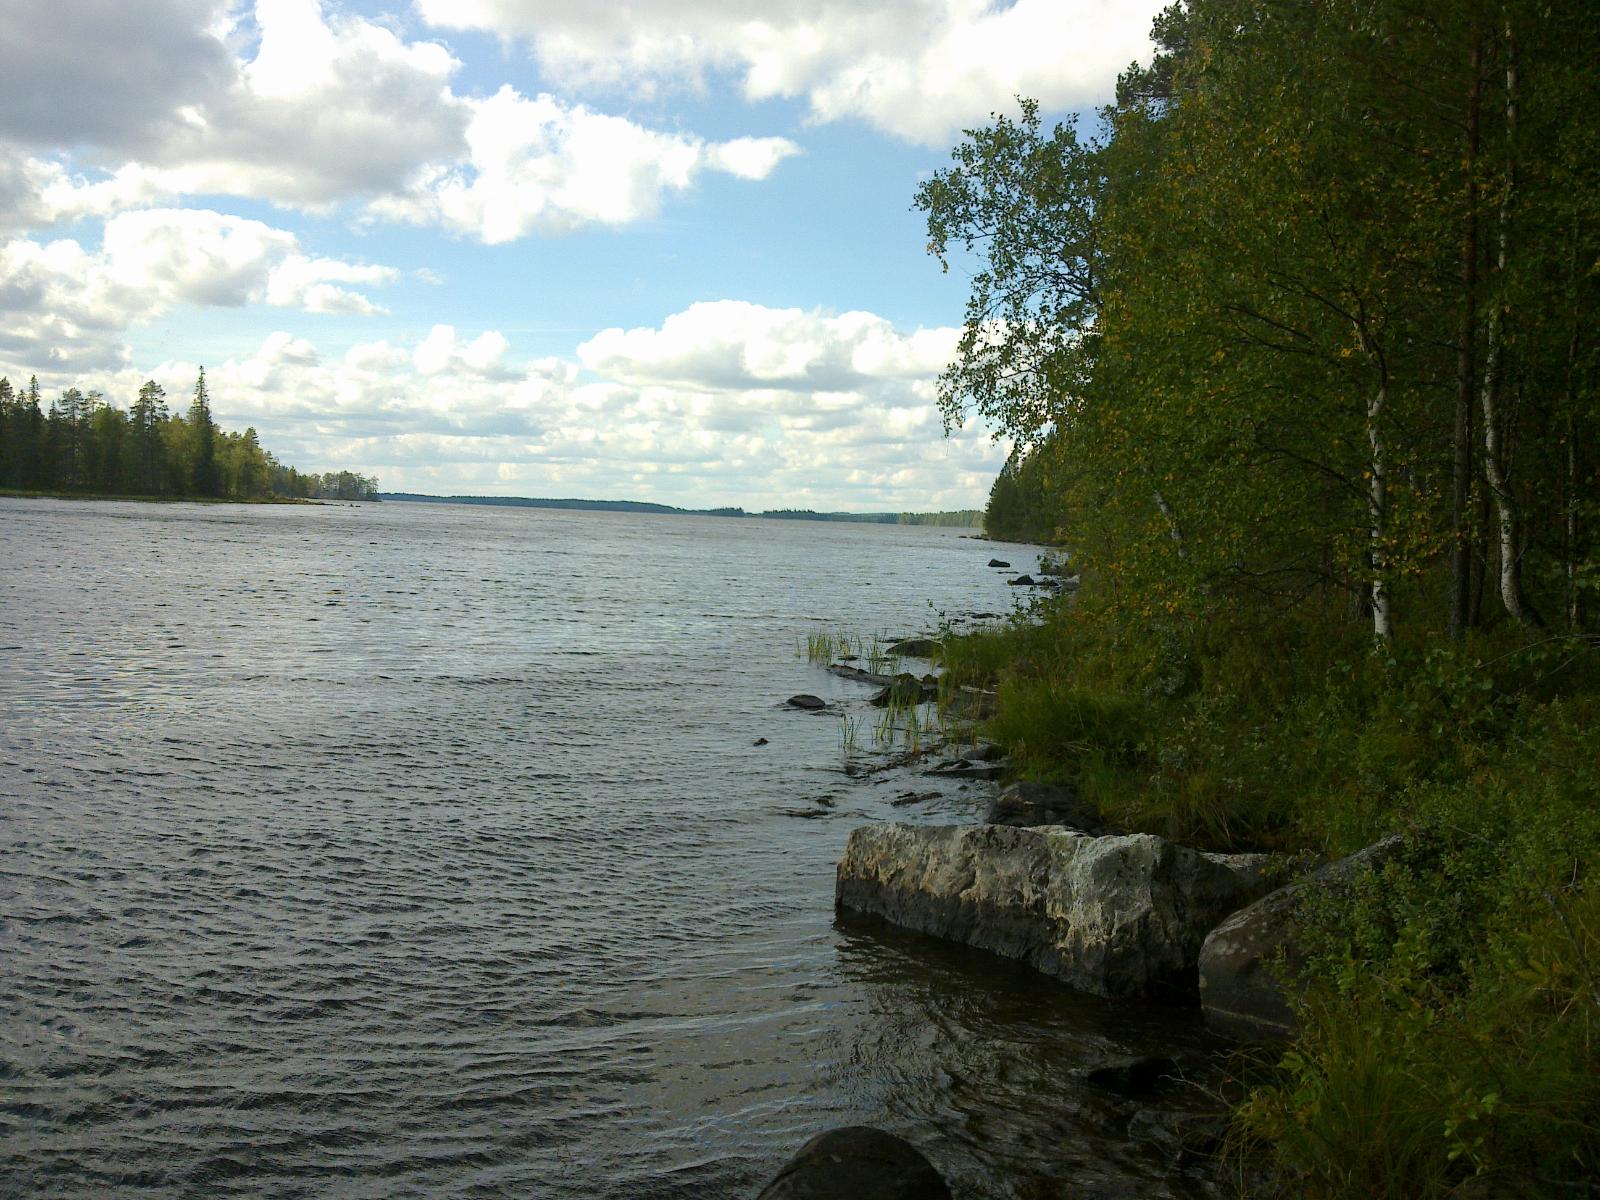 Kesäinen metsä reunustaa järveä ja laaja järvenselkä jatkuu horisonttiin. Rantavedessä on kiviä.